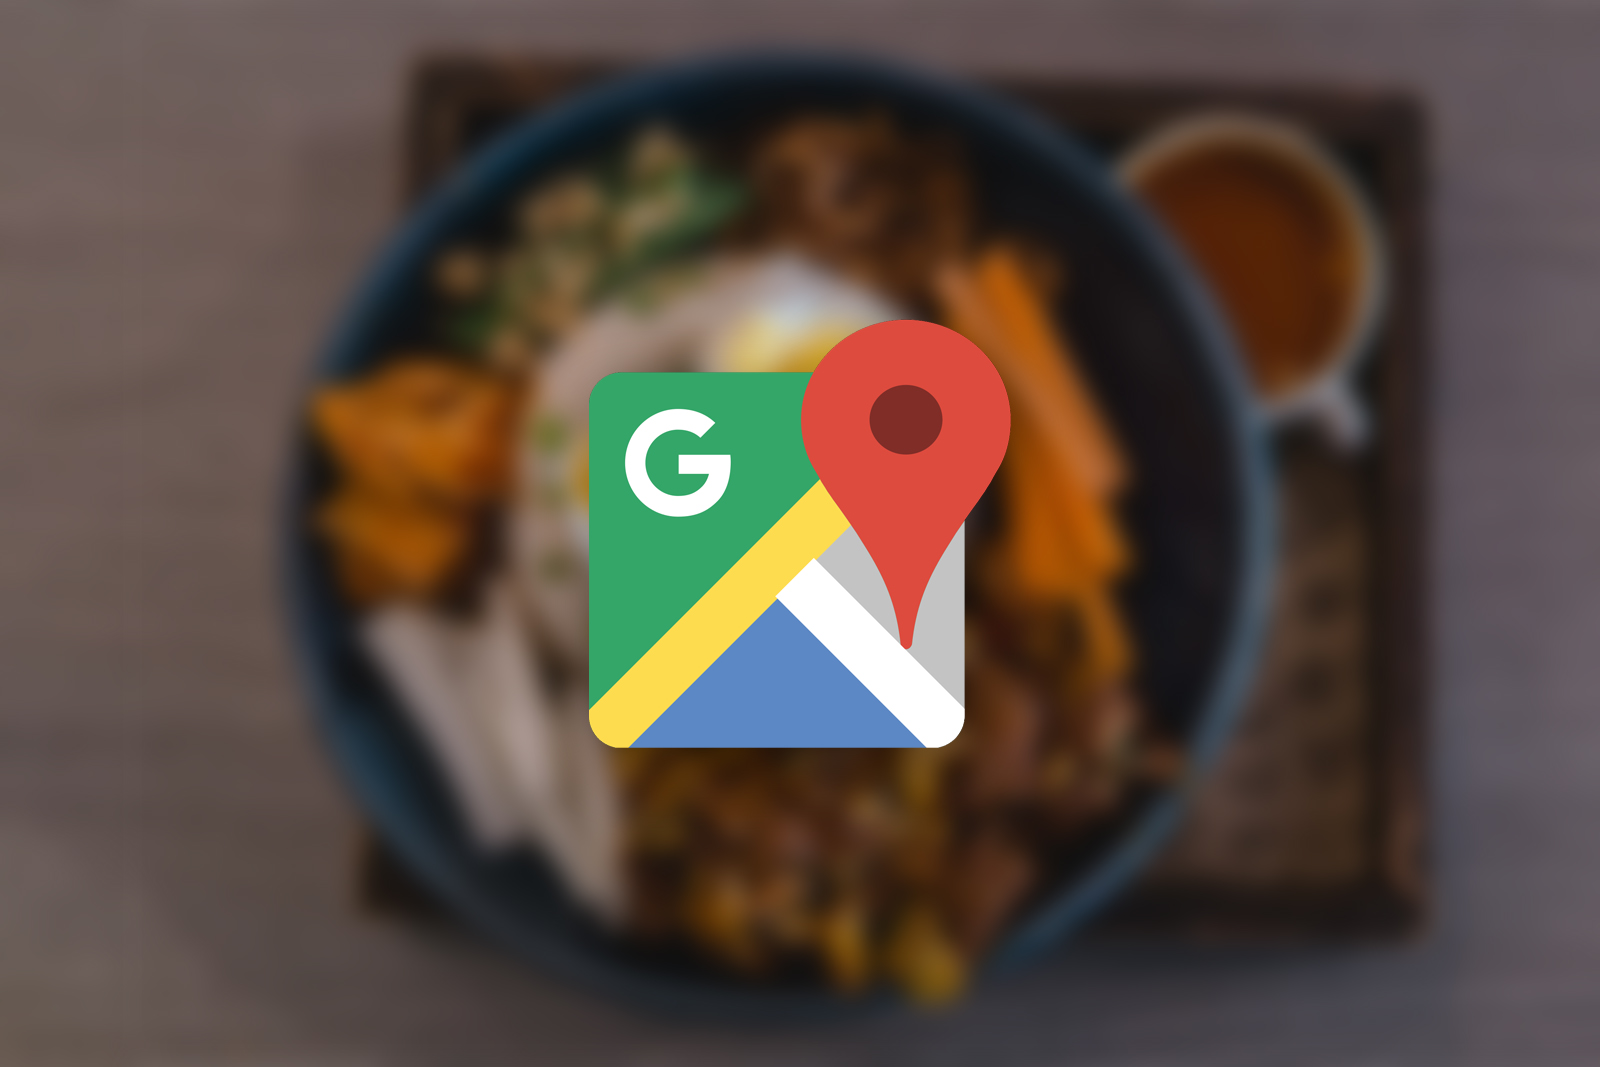 O Google Maps está recebendo um recurso incrível emprestado diretamente do Yelp